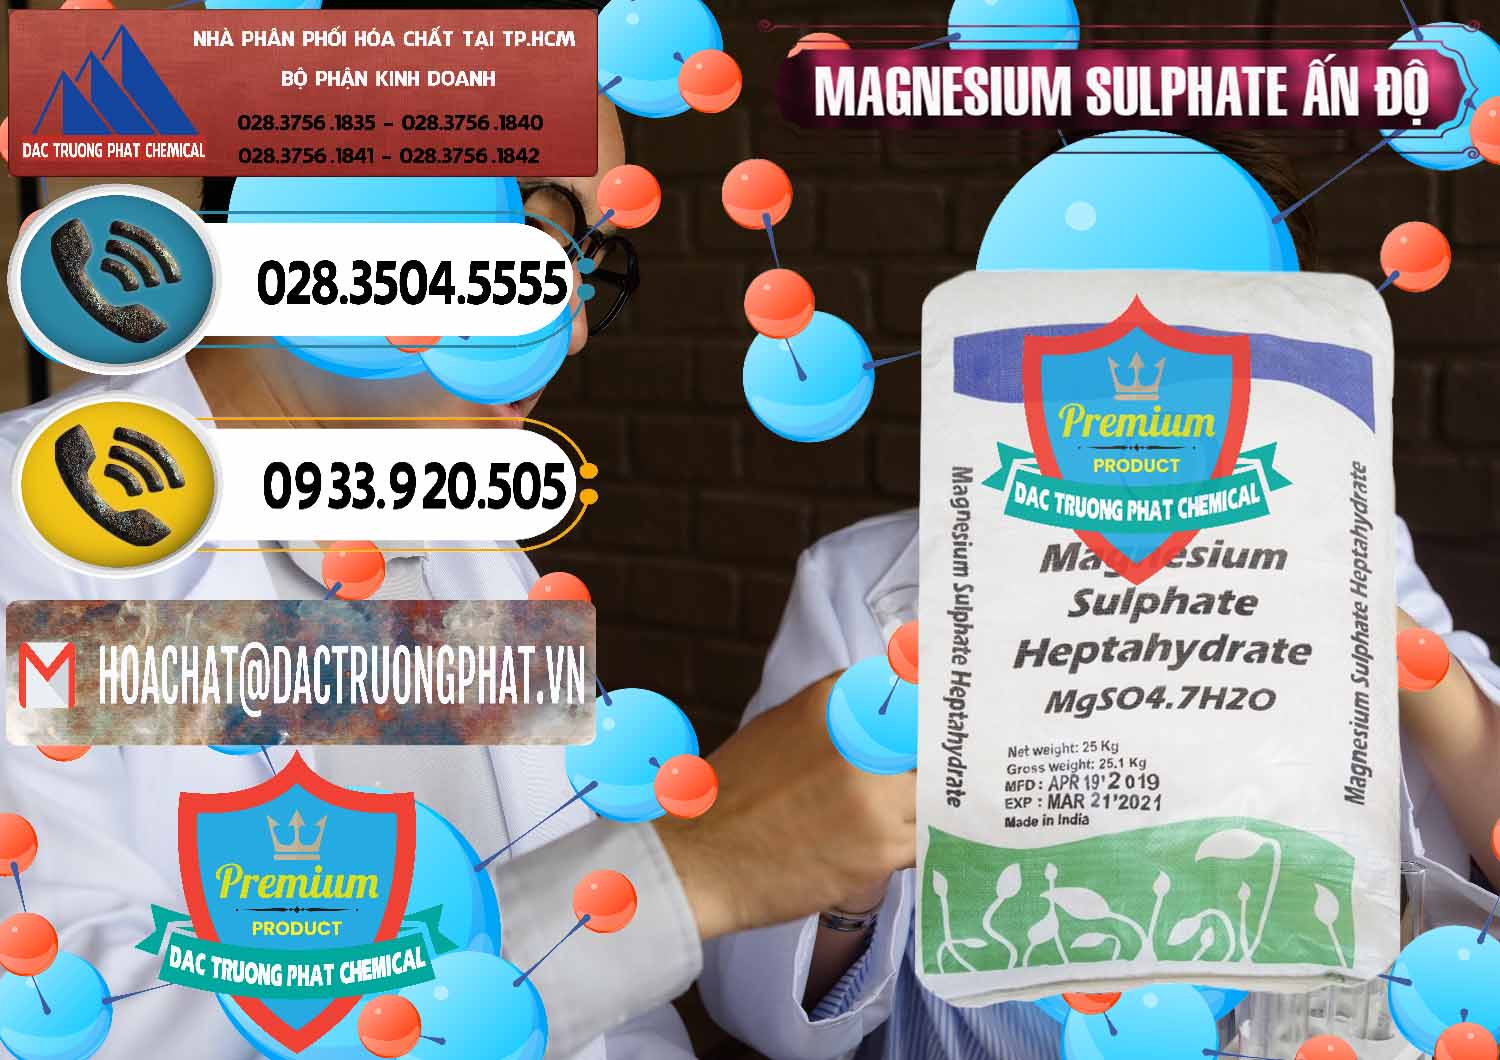 Nơi phân phối _ bán MGSO4.7H2O – Magnesium Sulphate Heptahydrate Ấn Độ India - 0362 - Phân phối và kinh doanh hóa chất tại TP.HCM - hoachatdetnhuom.vn